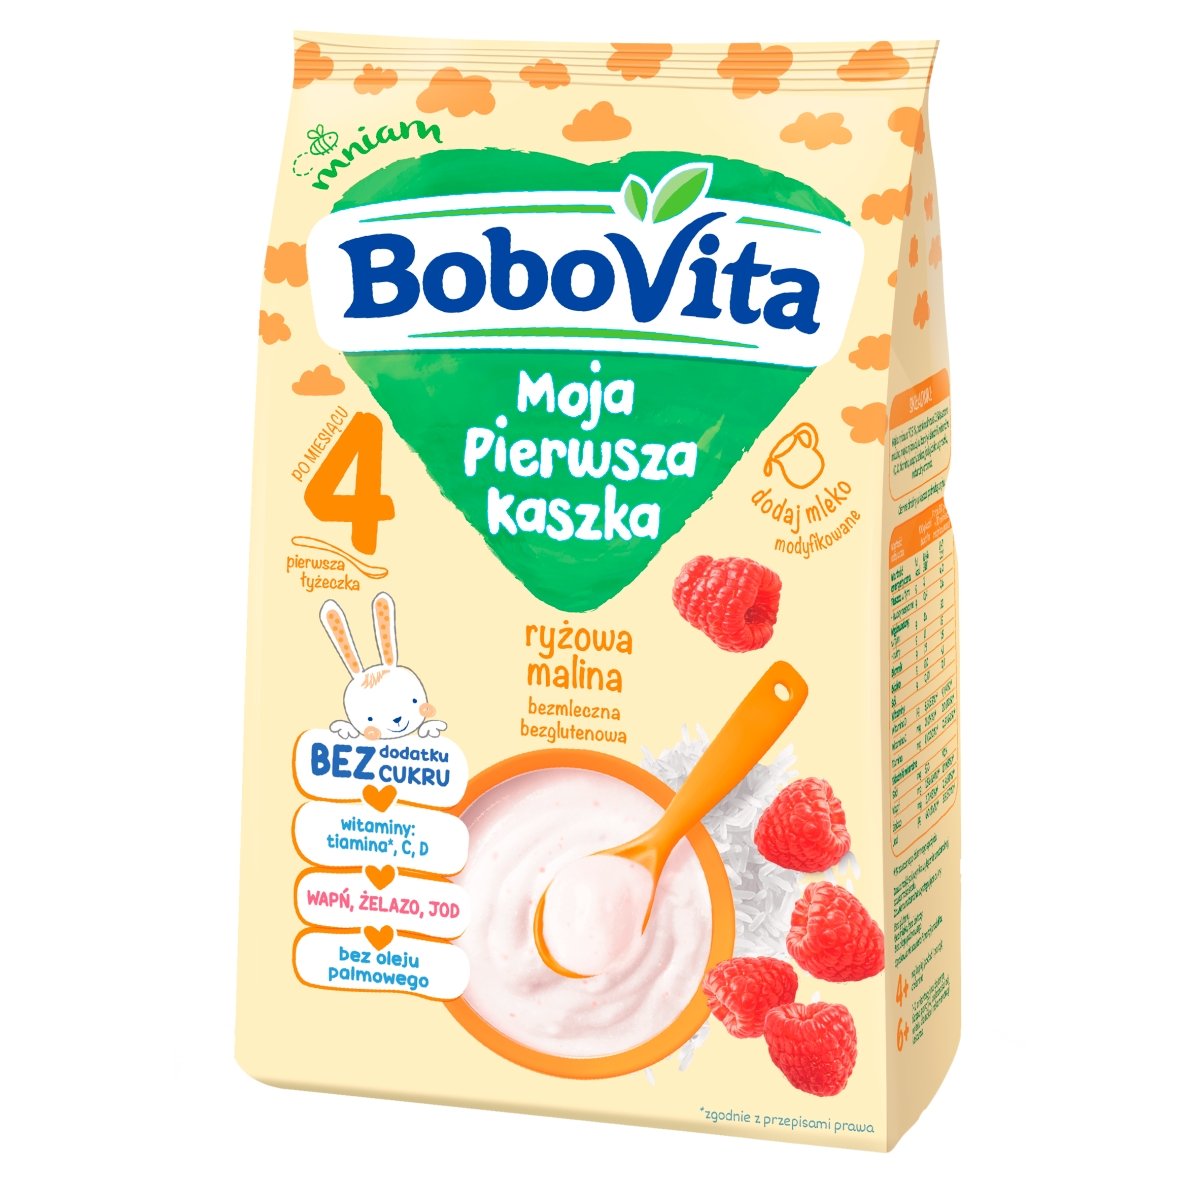 Nutricia BoboVita Moja Pierwsza Kaszka ryżowa malina bez cukru po 4. miesiącu, 180g